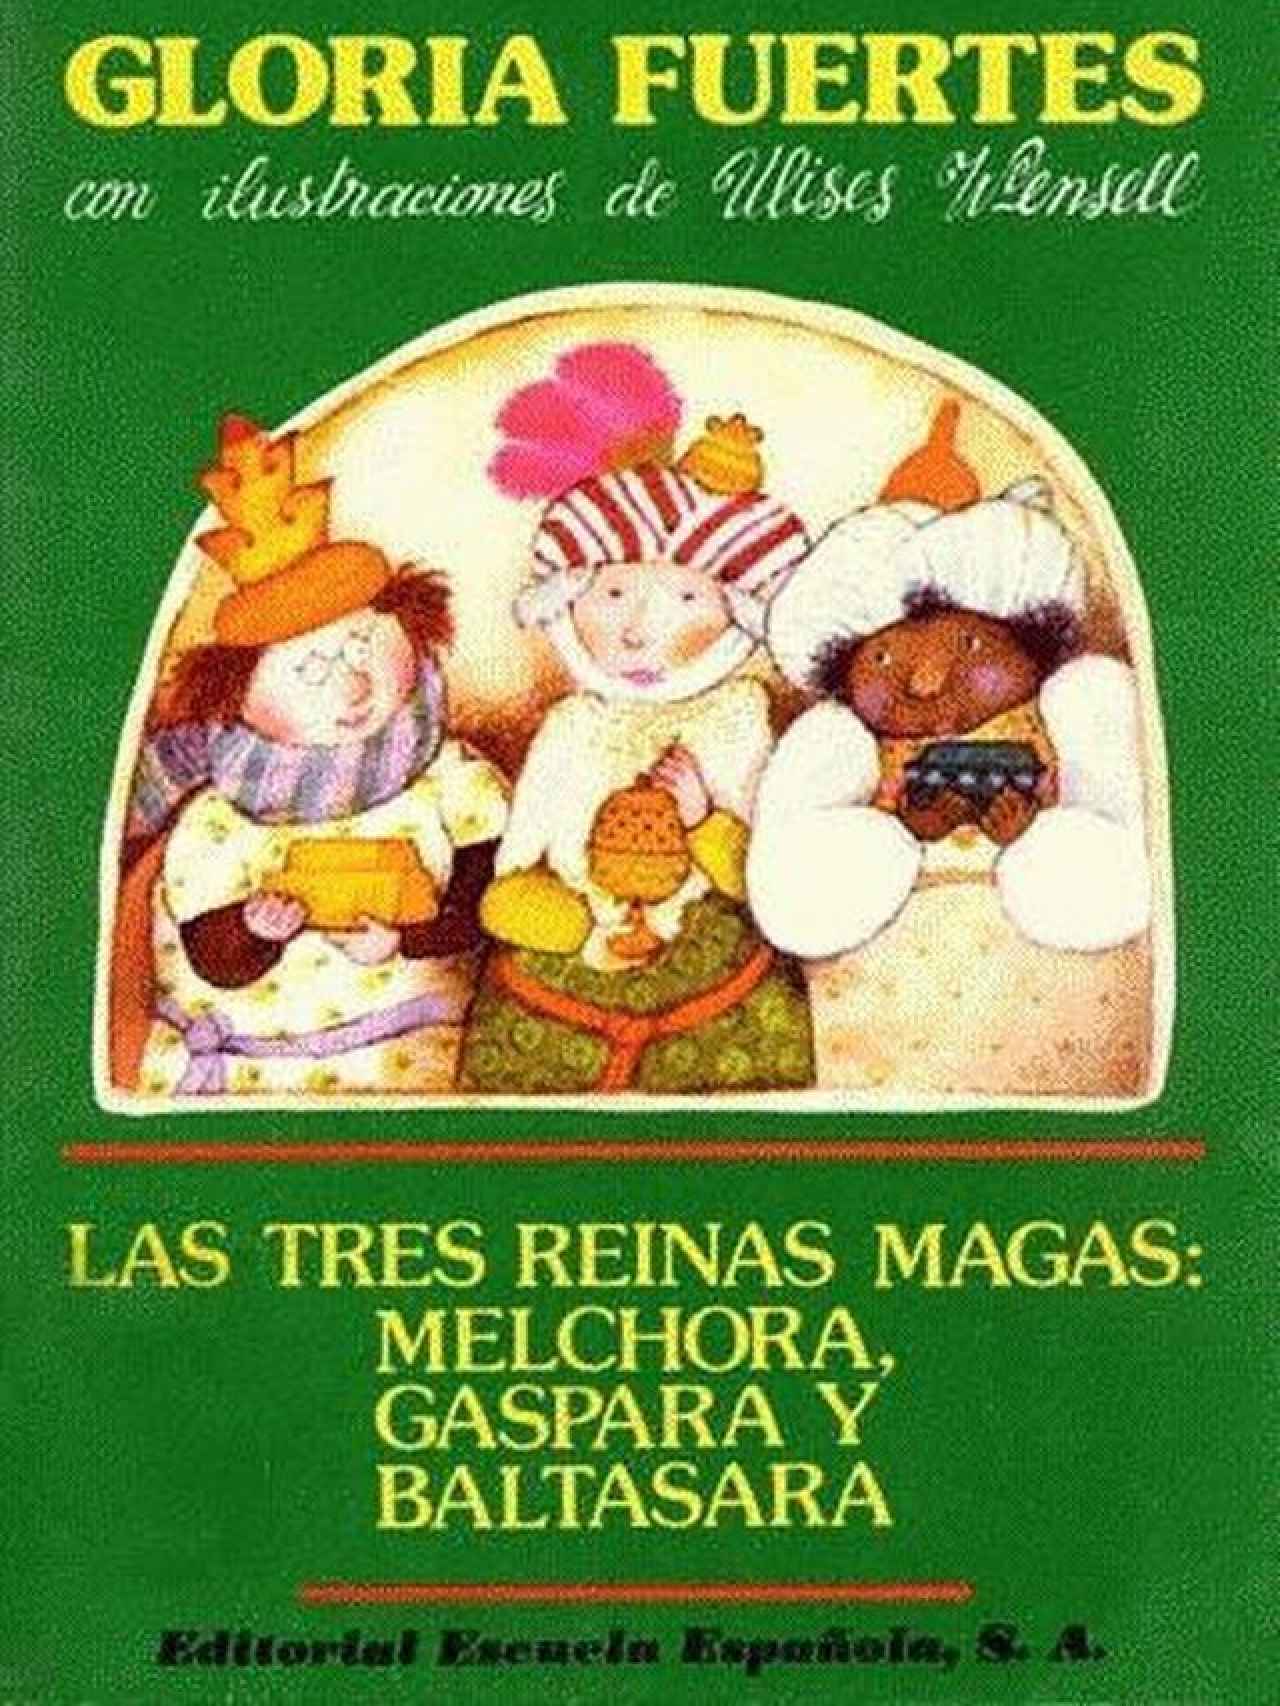 Portada del libro Las tres reinas magas, de Gloria Fuertes.